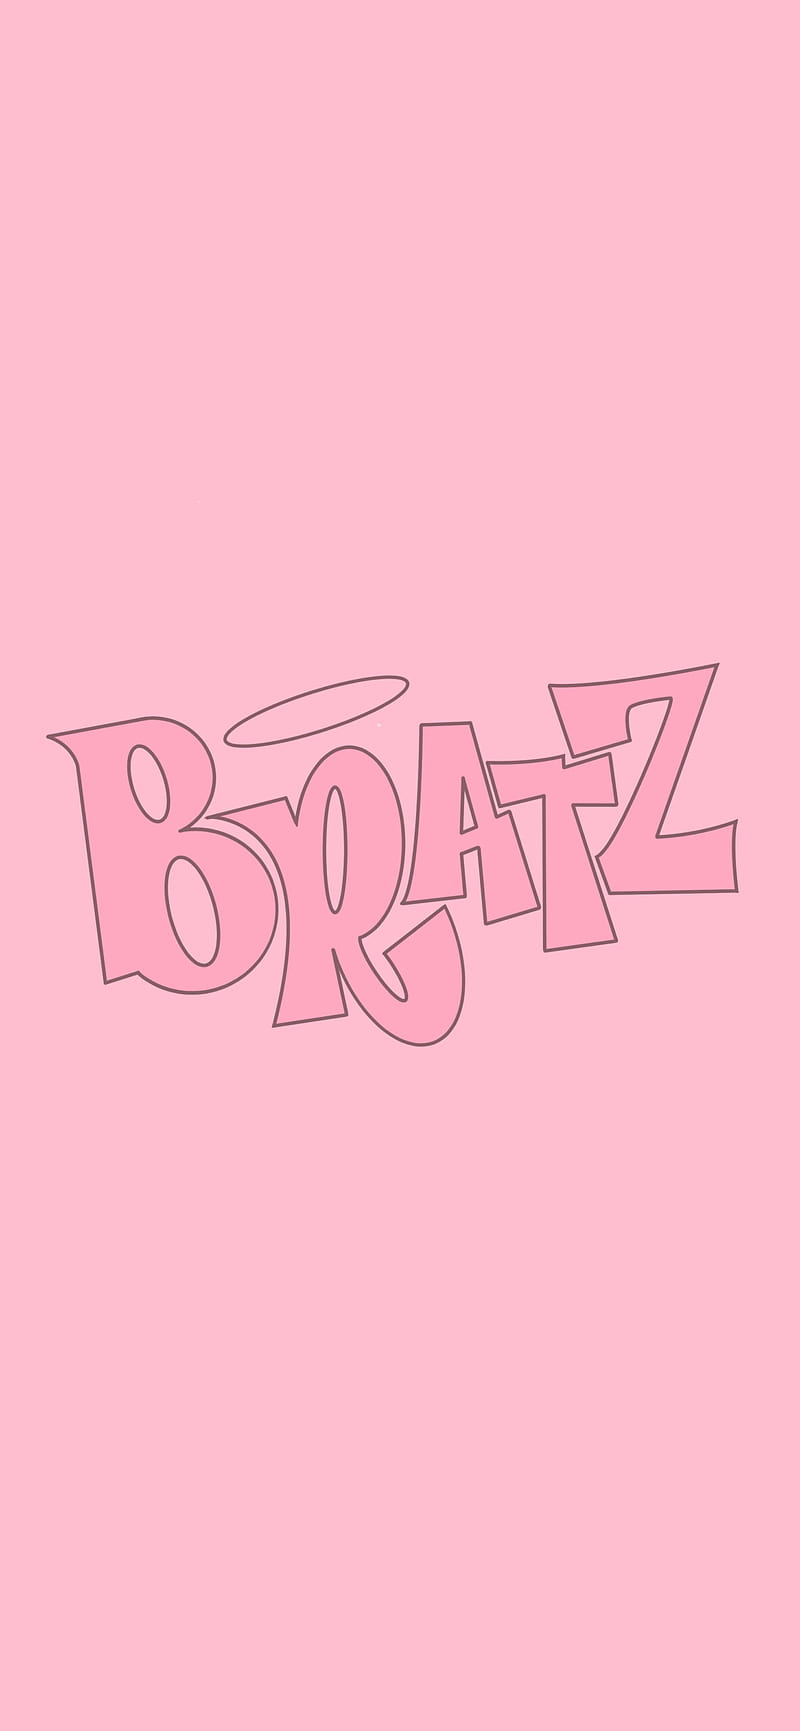 Cùng khám phá Bratz Logo Pink Aesthetic - một hình ảnh đầy sức sống và màu sắc tươi mới. Biểu tượng nổi tiếng của những cô gái Bratz sẽ khiến bạn nhớ lại ký ức ngày thơ. Hãy cùng thưởng thức hình ảnh này và truyền tải cho người thân yêu của bạn.